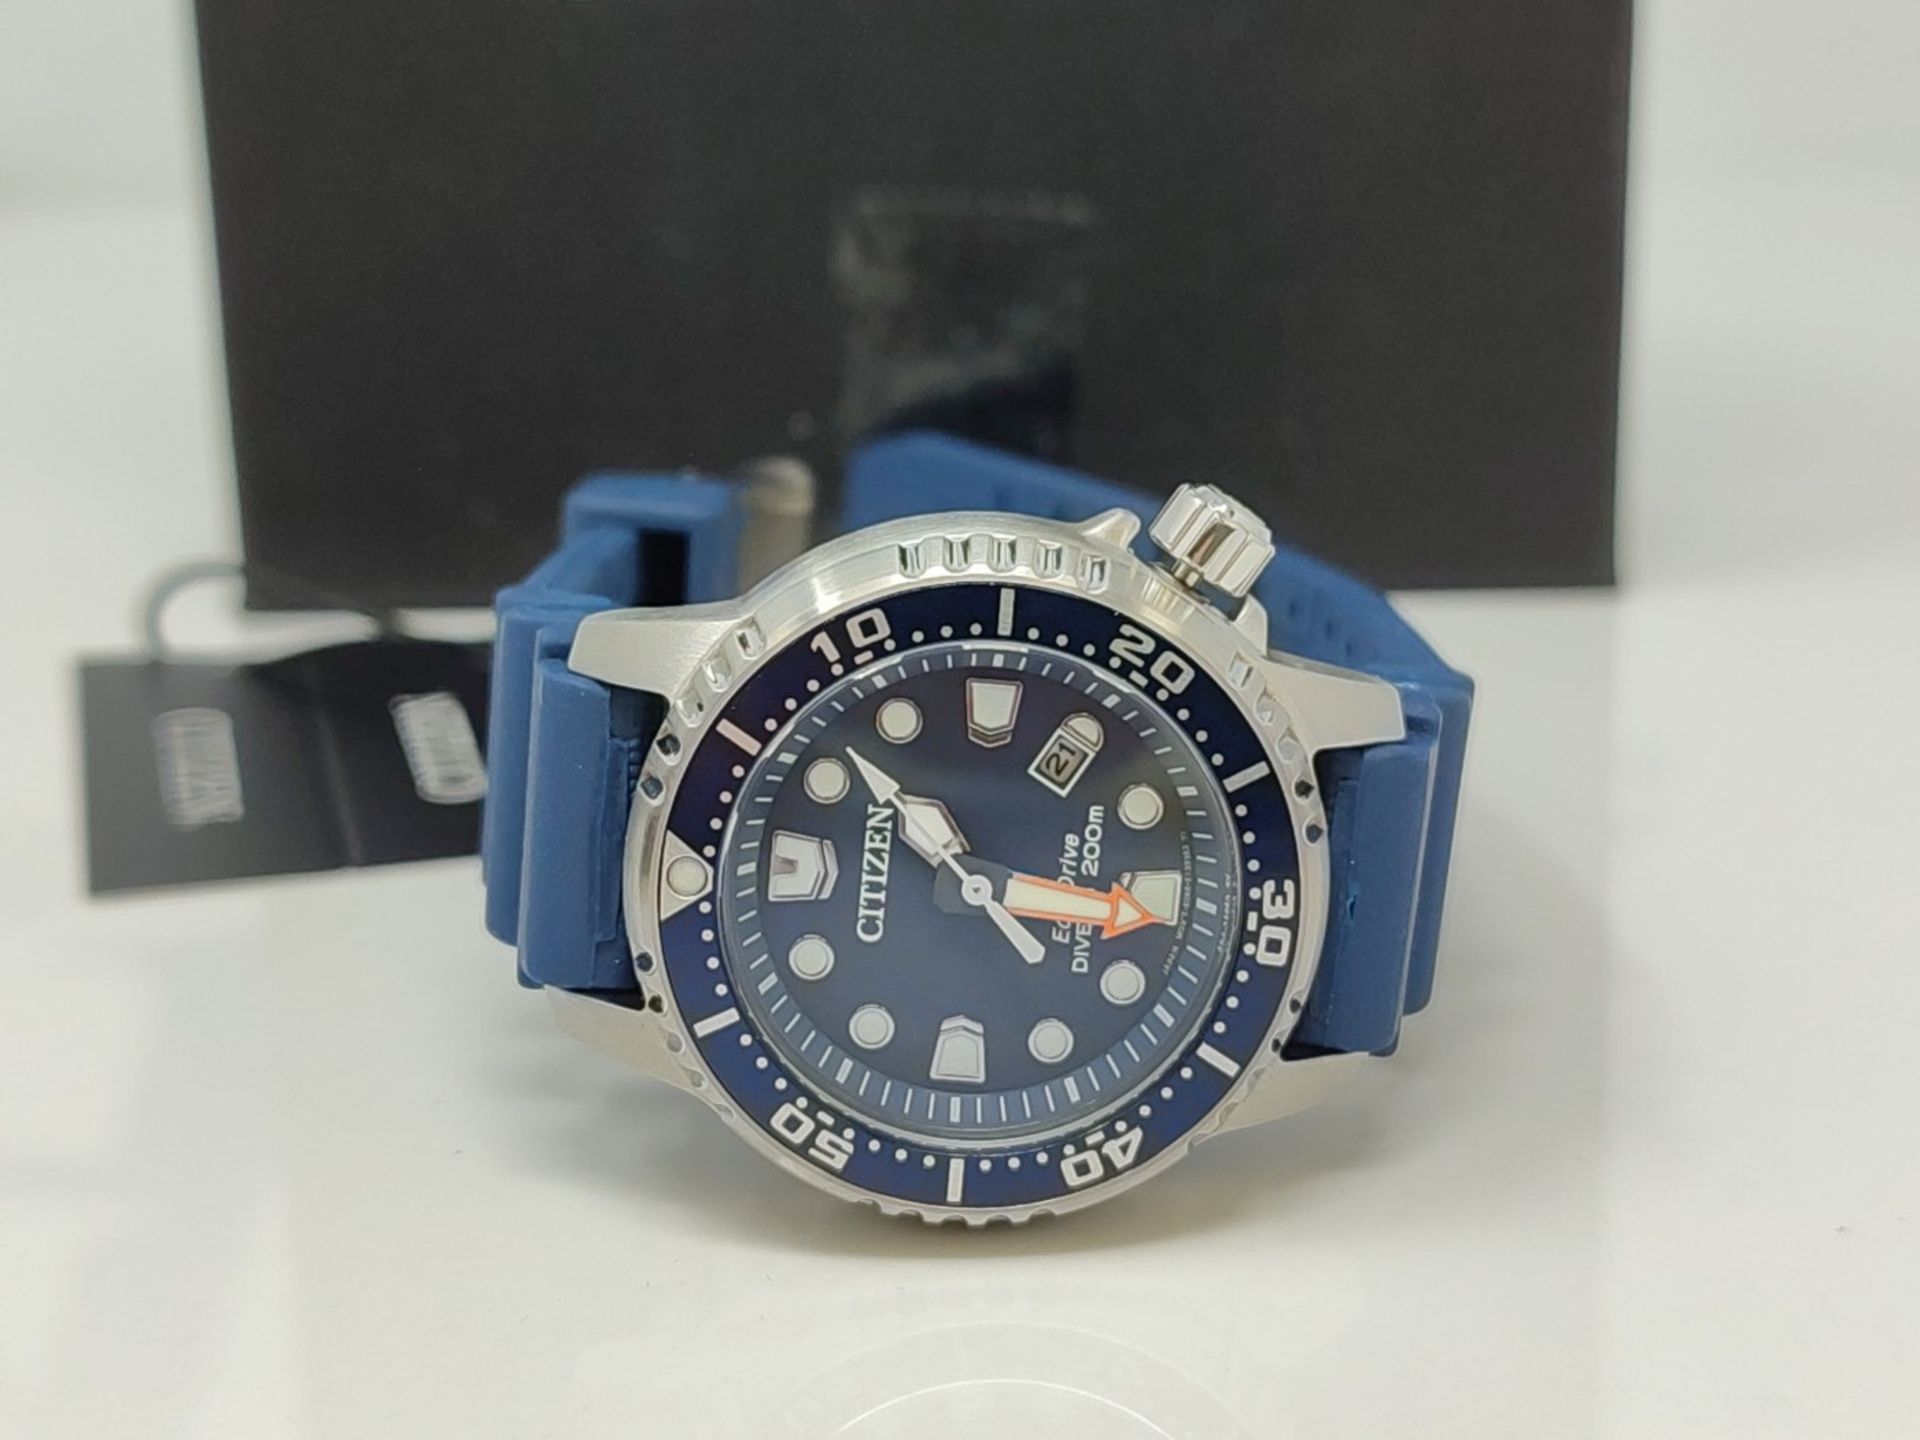 RRP £175.00 Citizen Men's Analog Quartz Watch with Rubber Strap EP6051-14L, Blue - Image 2 of 3